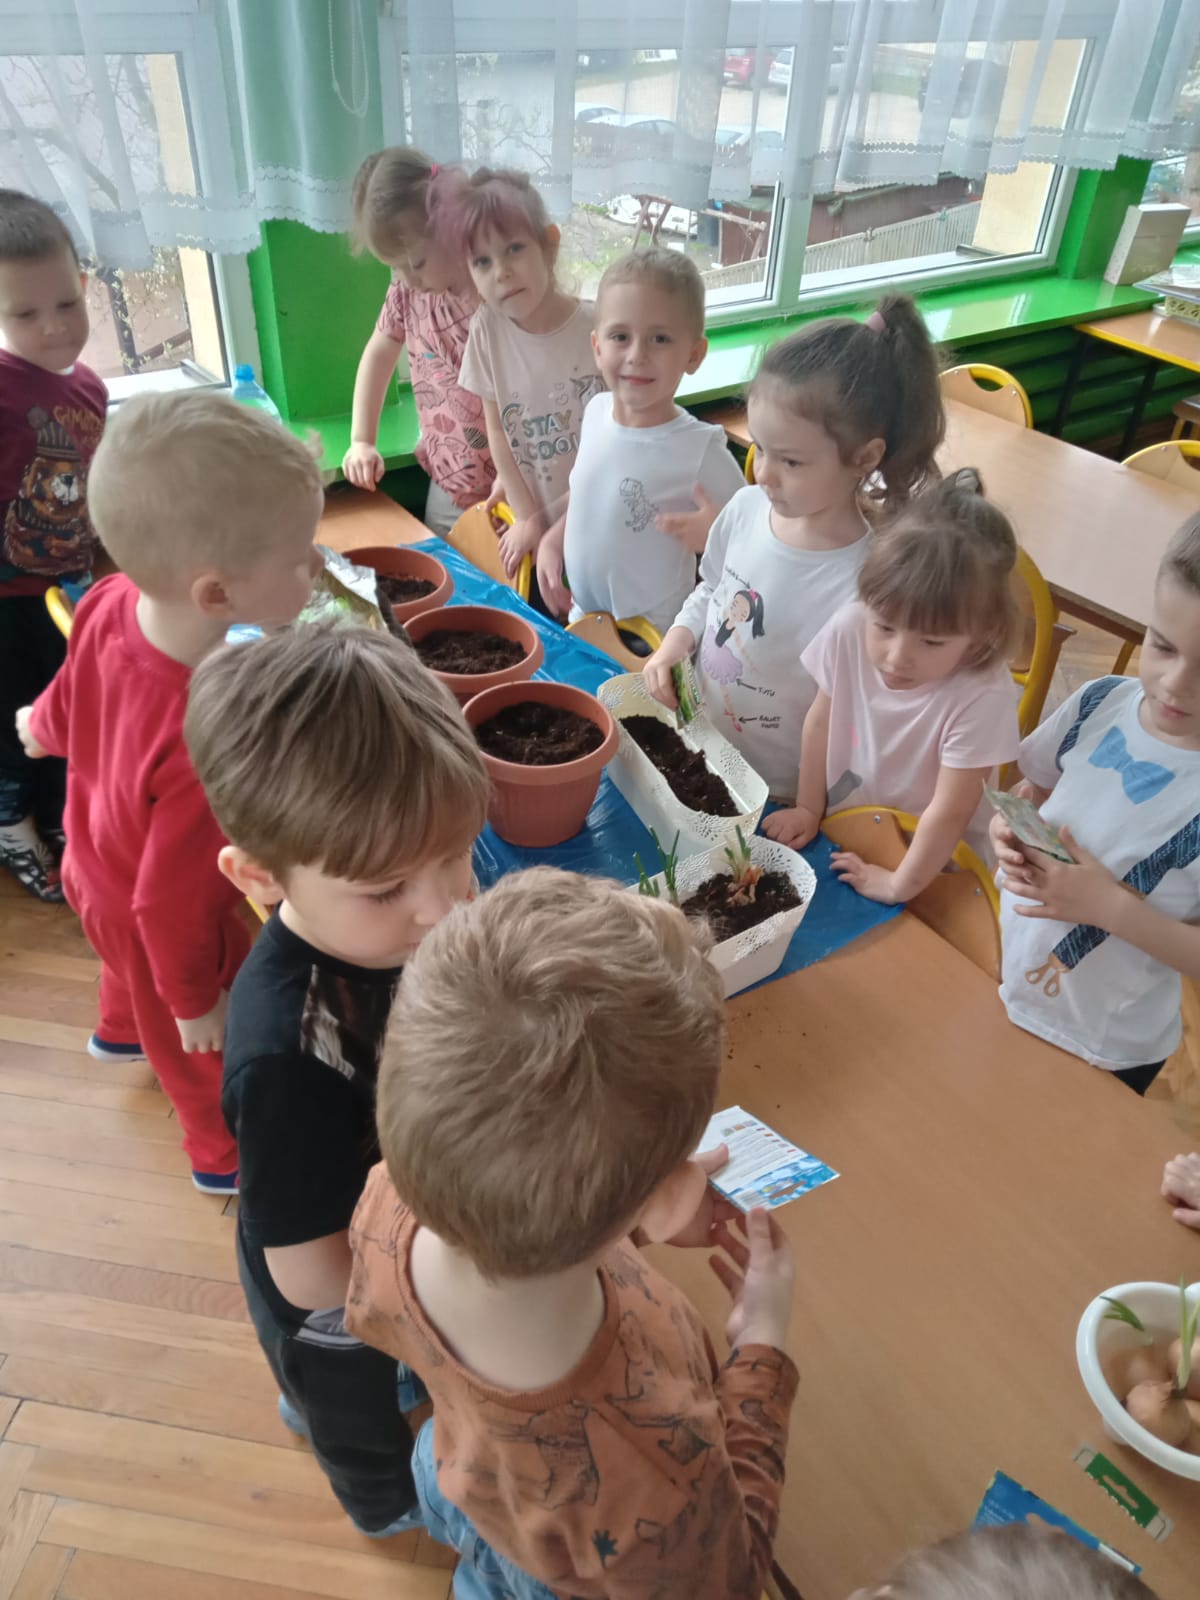 Dzieic sadzą nasionka w doniczkach z ziemią